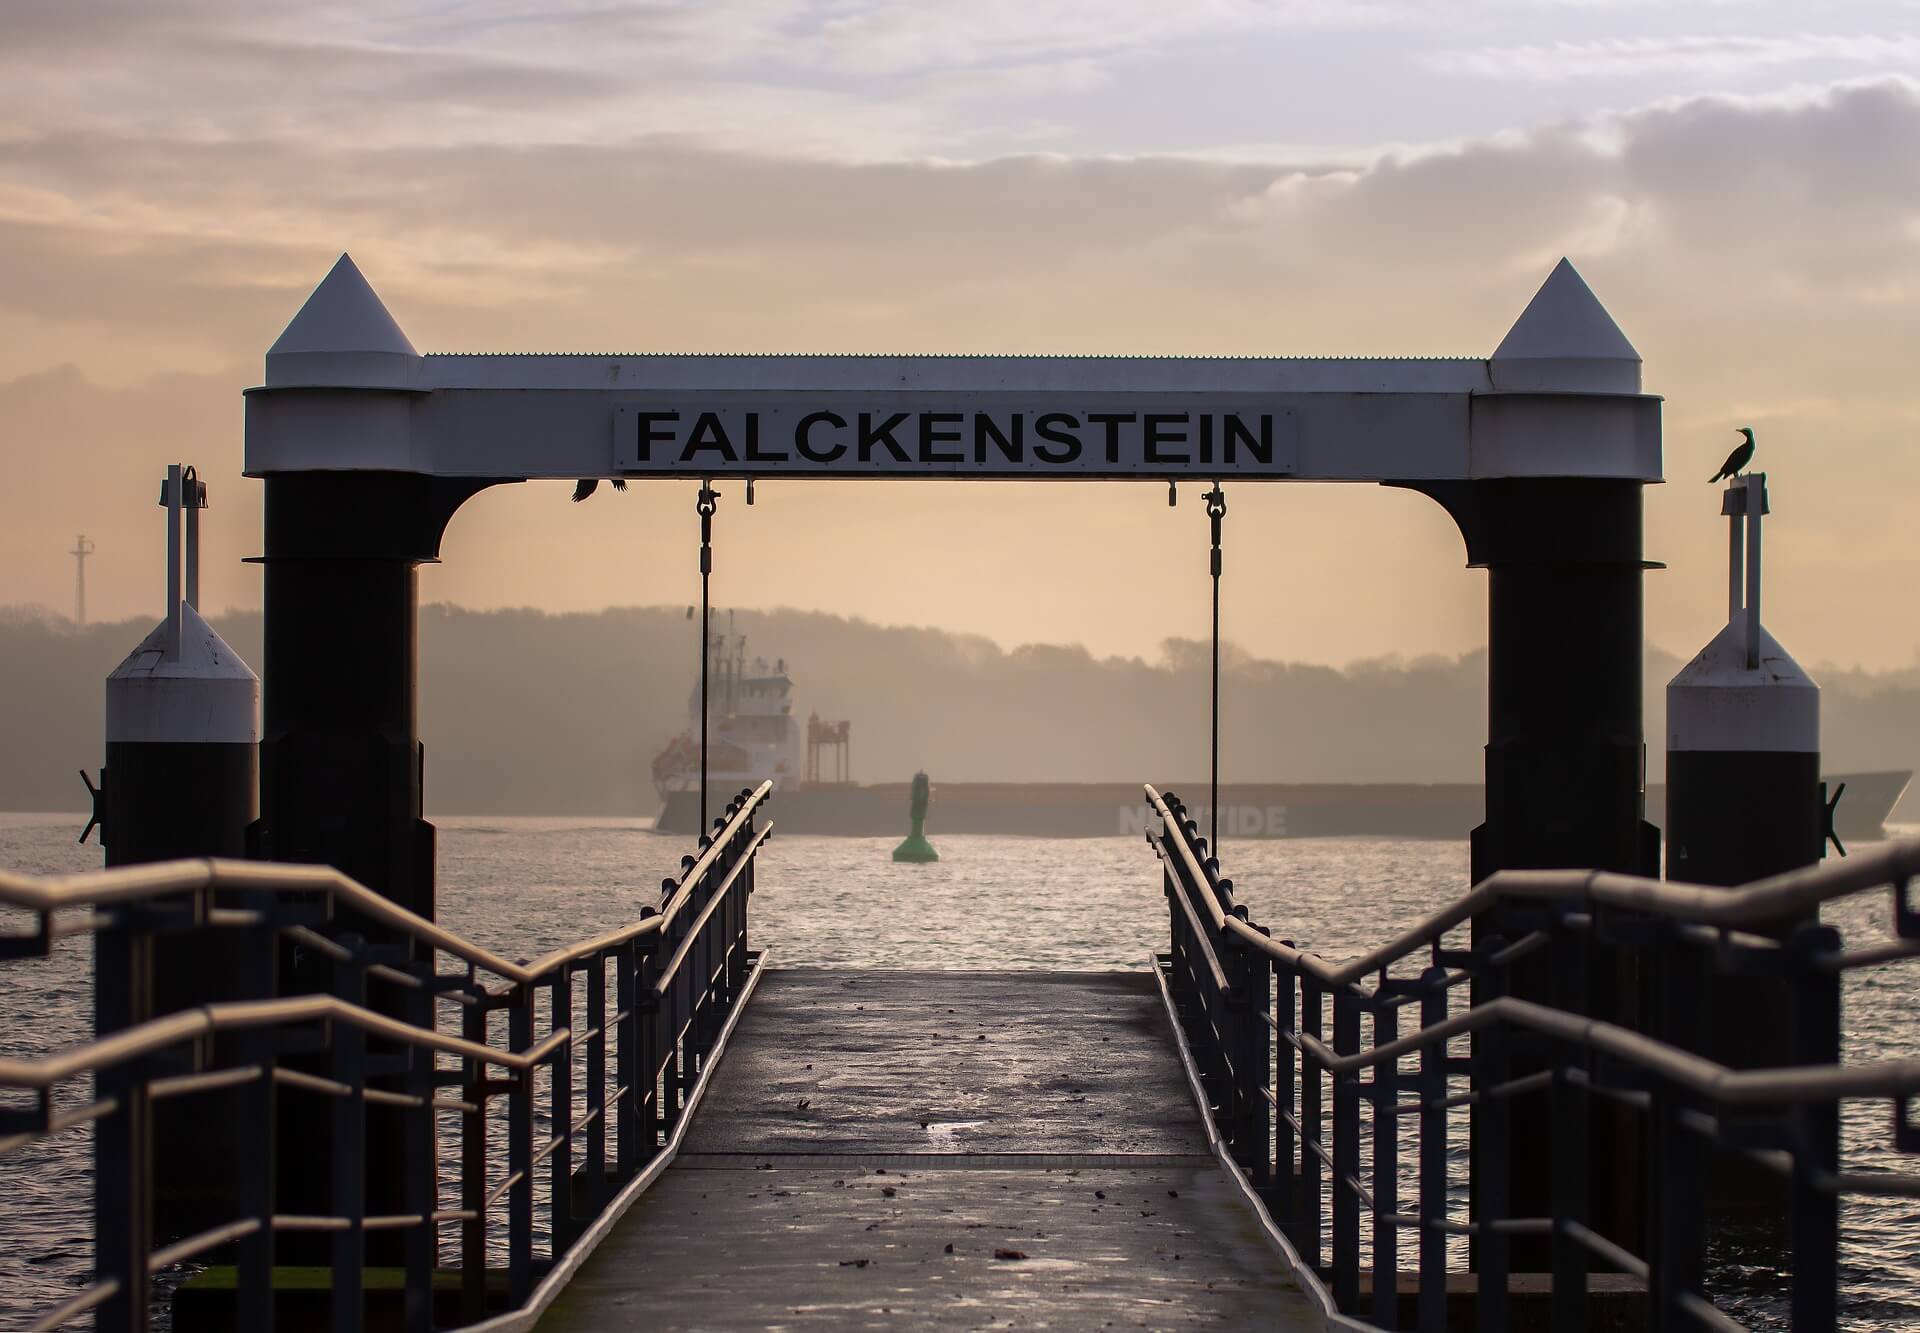 Falckenstein ferry terminal, beach at the Kiel fjord